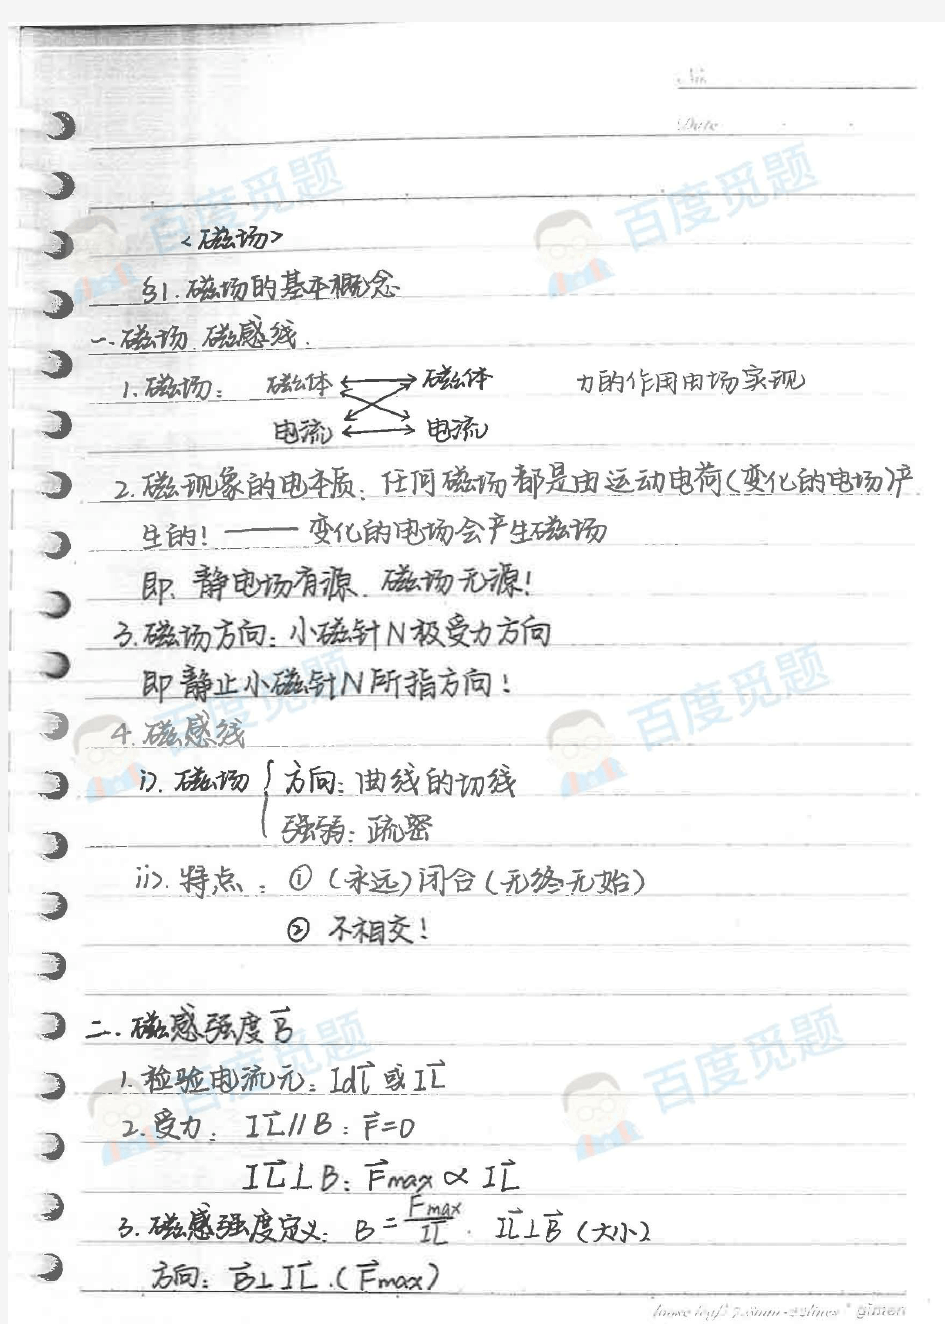 重庆南开中学理科学霸高中物理笔记_磁场_2015高考状元笔记